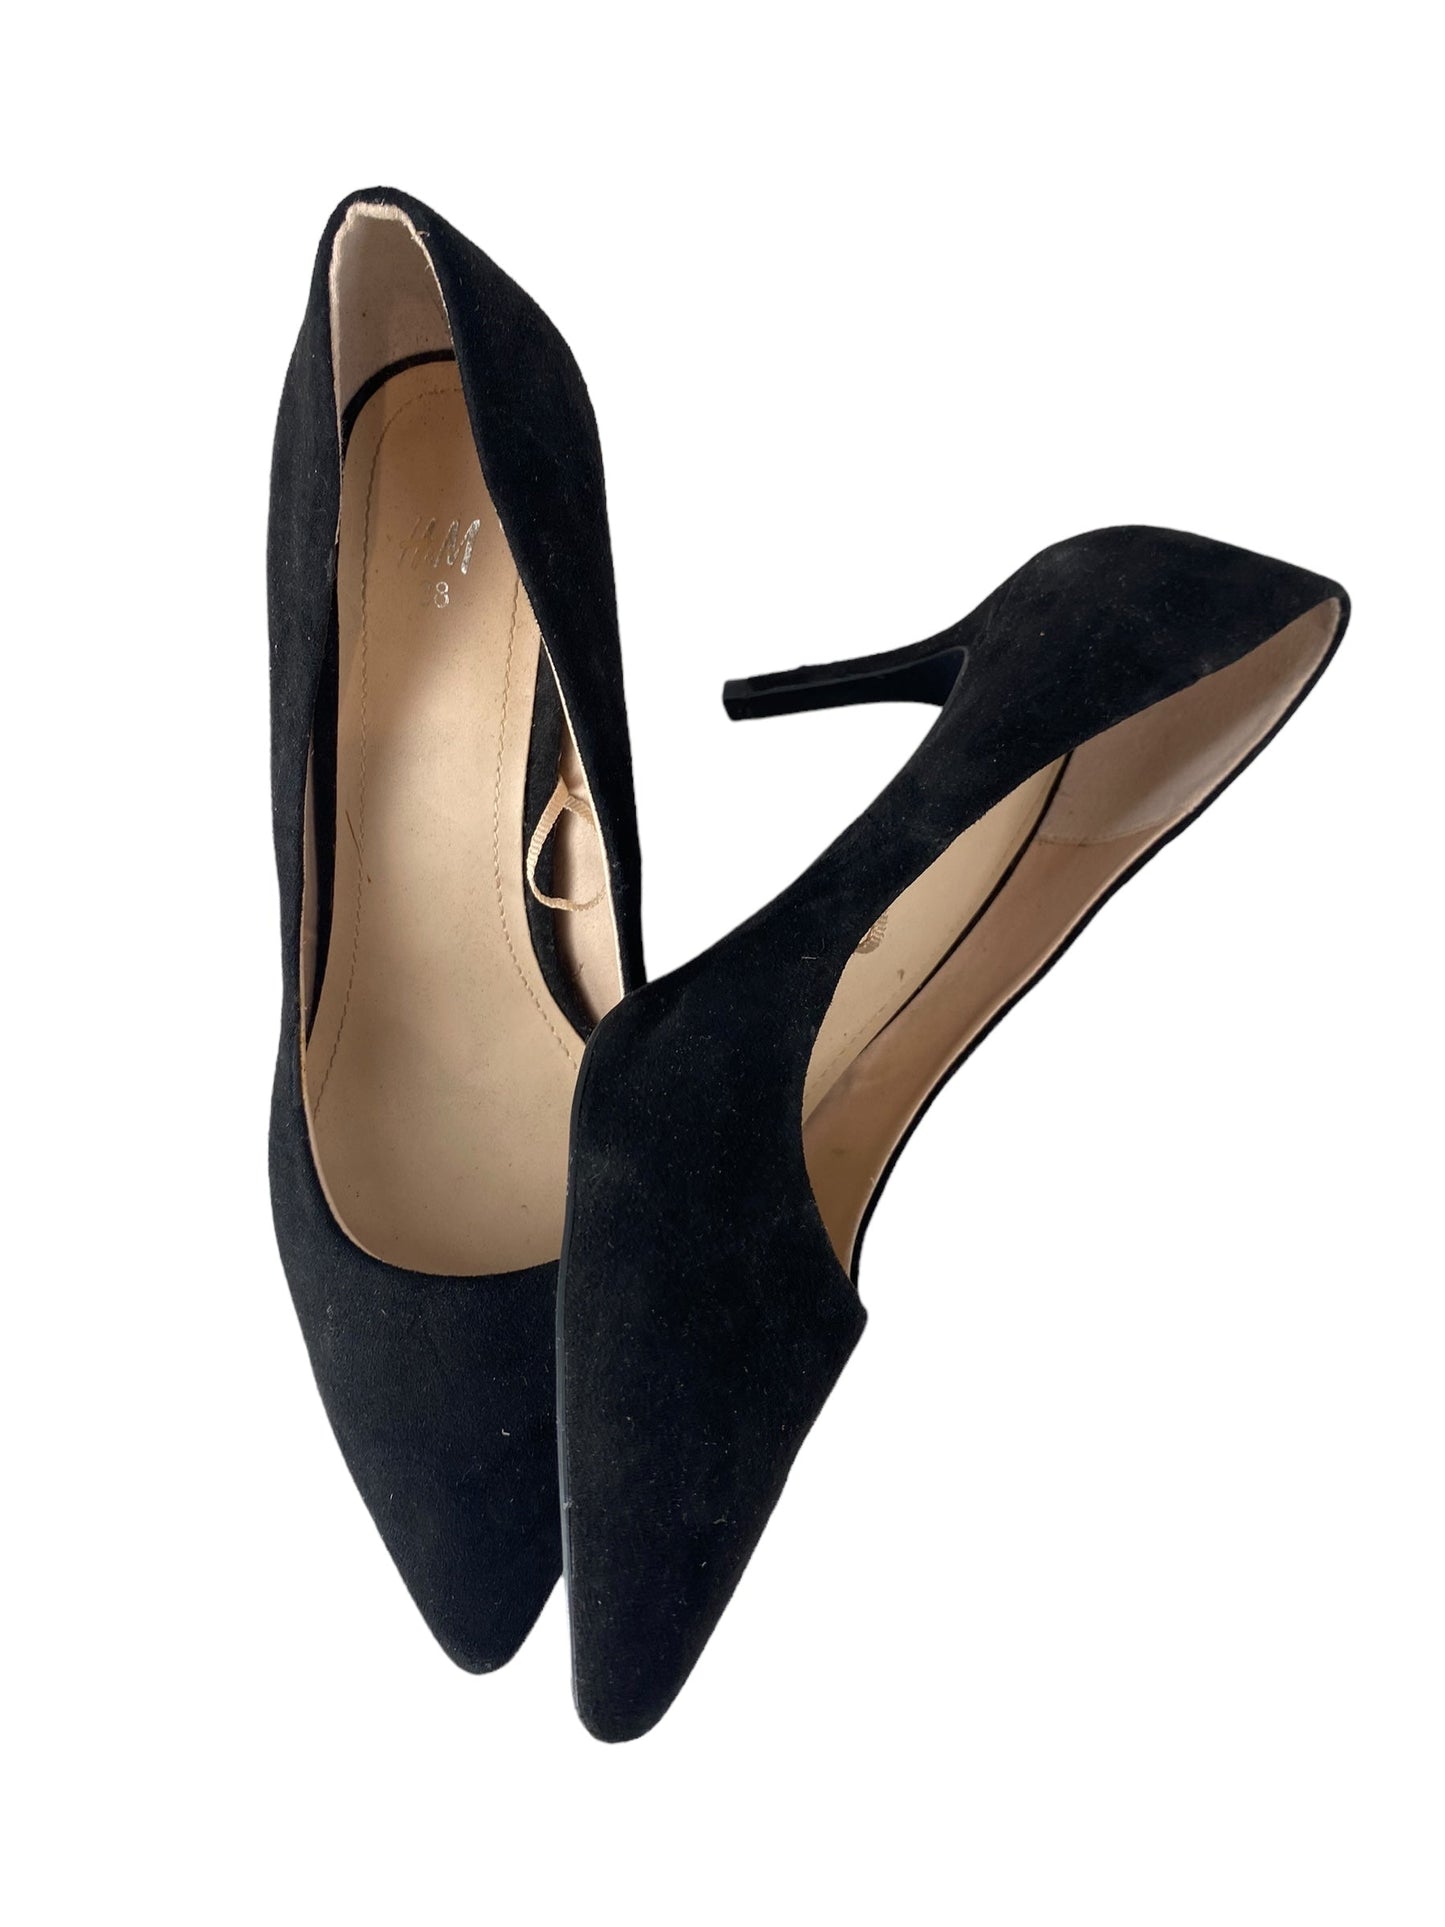 Black Shoes Heels Stiletto H&m, Size 8